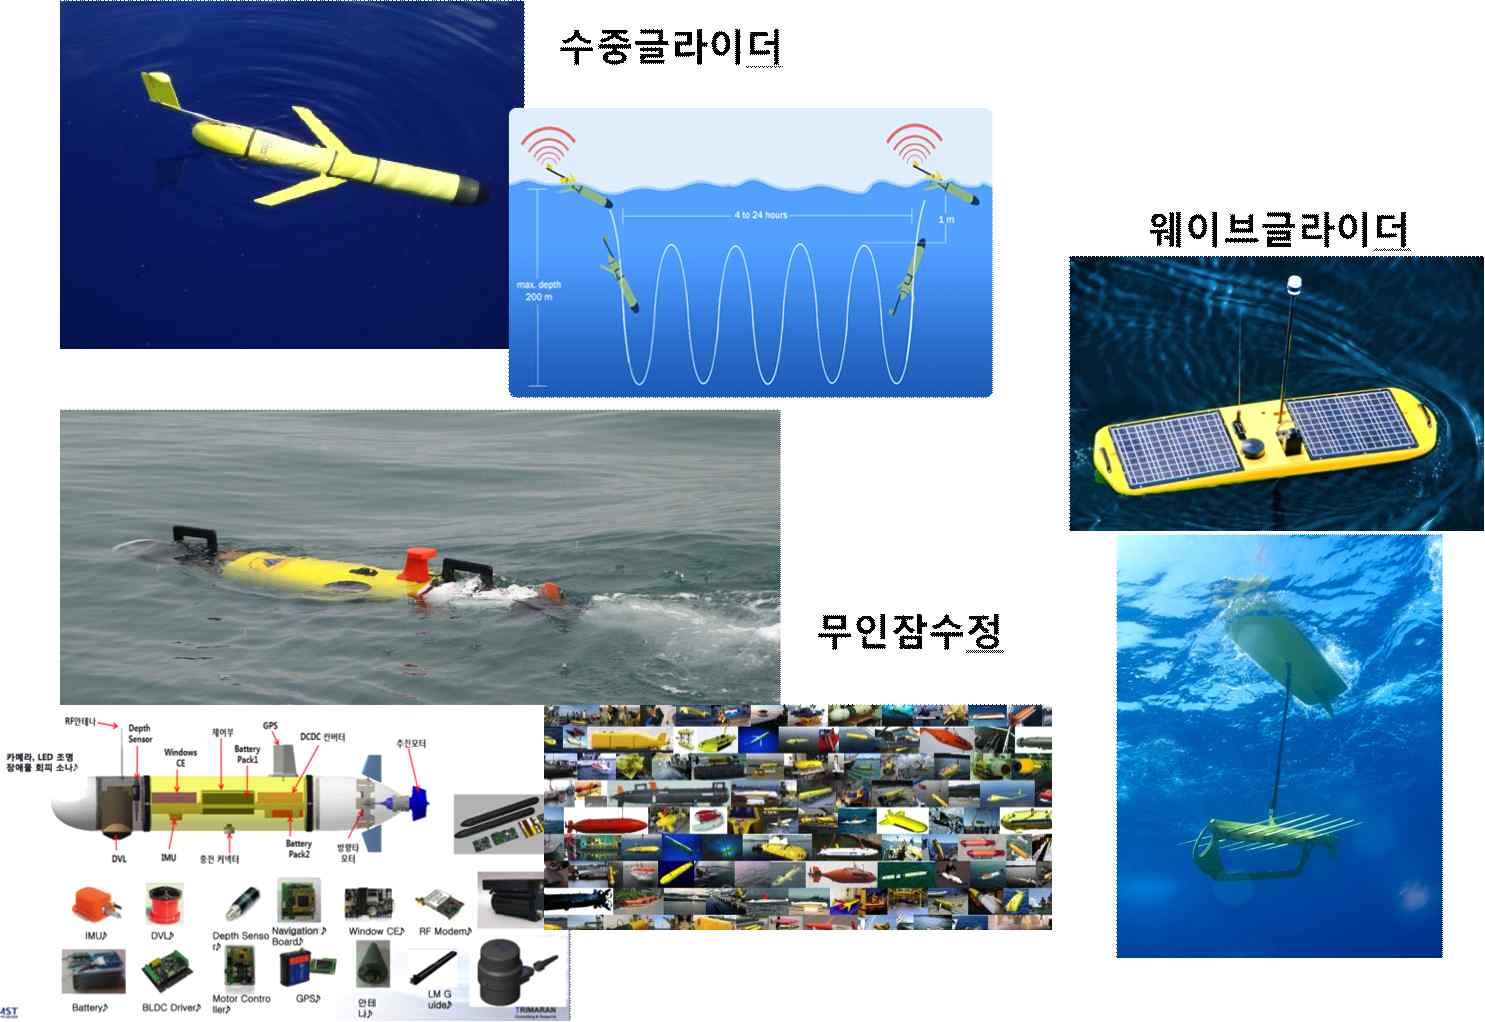 해양 감시를 위한 무인 이동형 플랫폼 (AUV)의 종류